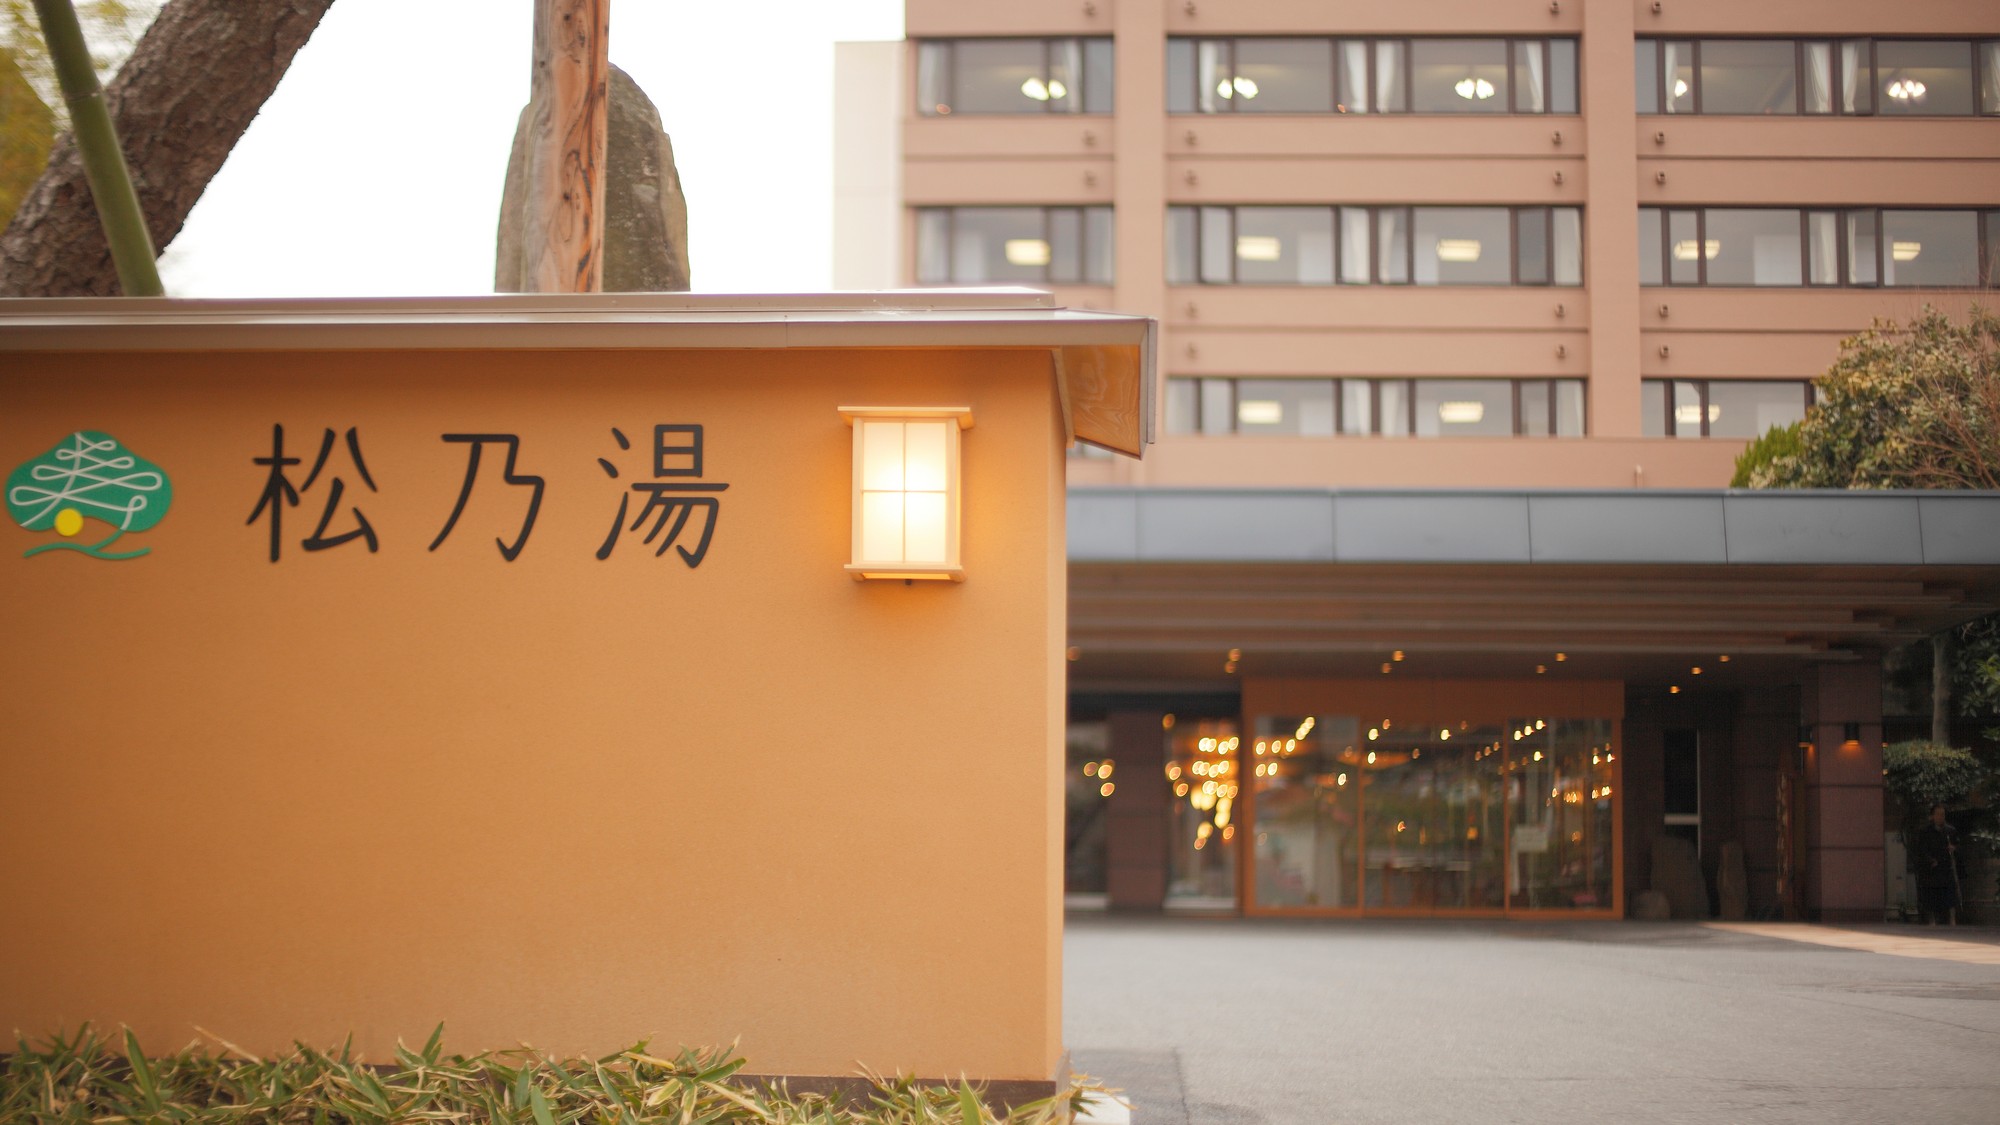 入口は、大きな松の木と「松乃湯」のマークが目印です。